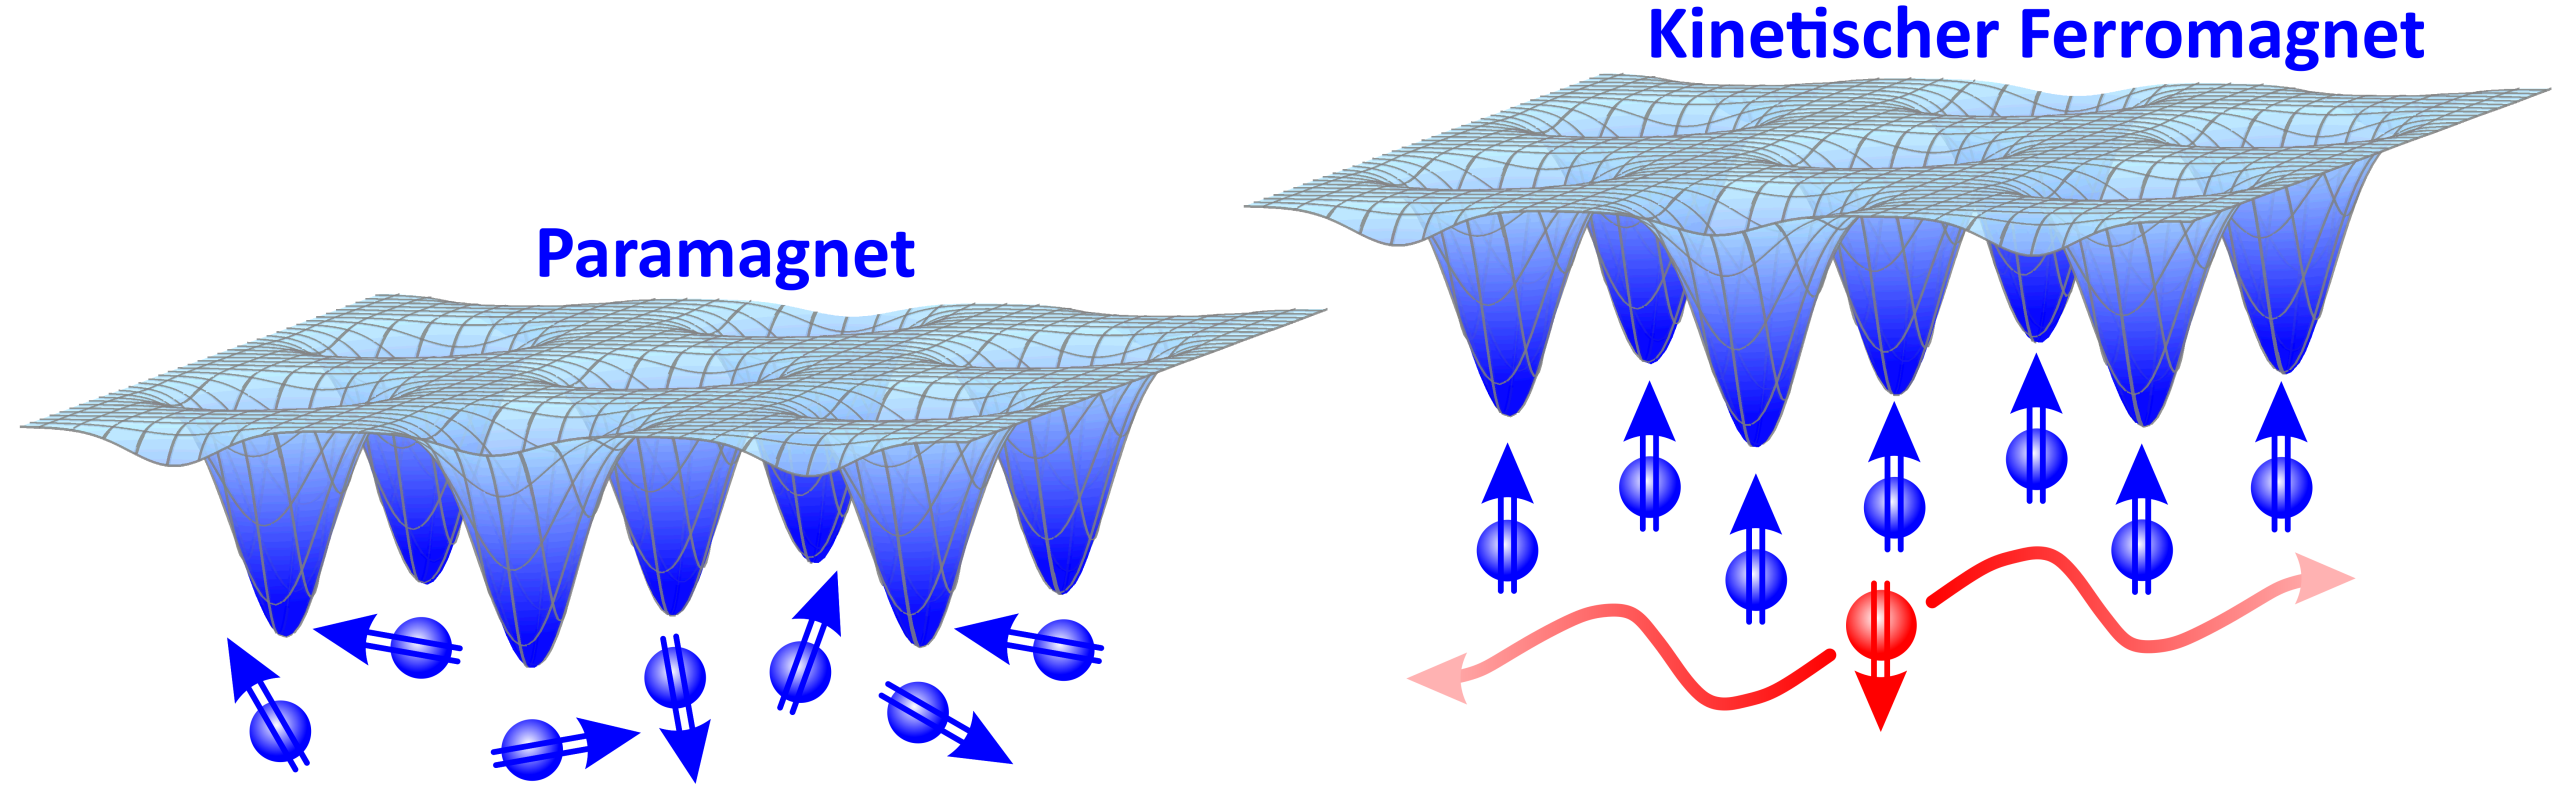 Vergr?sserte Ansicht: Zwei Illustrationen: rechts zum kinetischen Ferromagnet und links zum Paramagnet. 